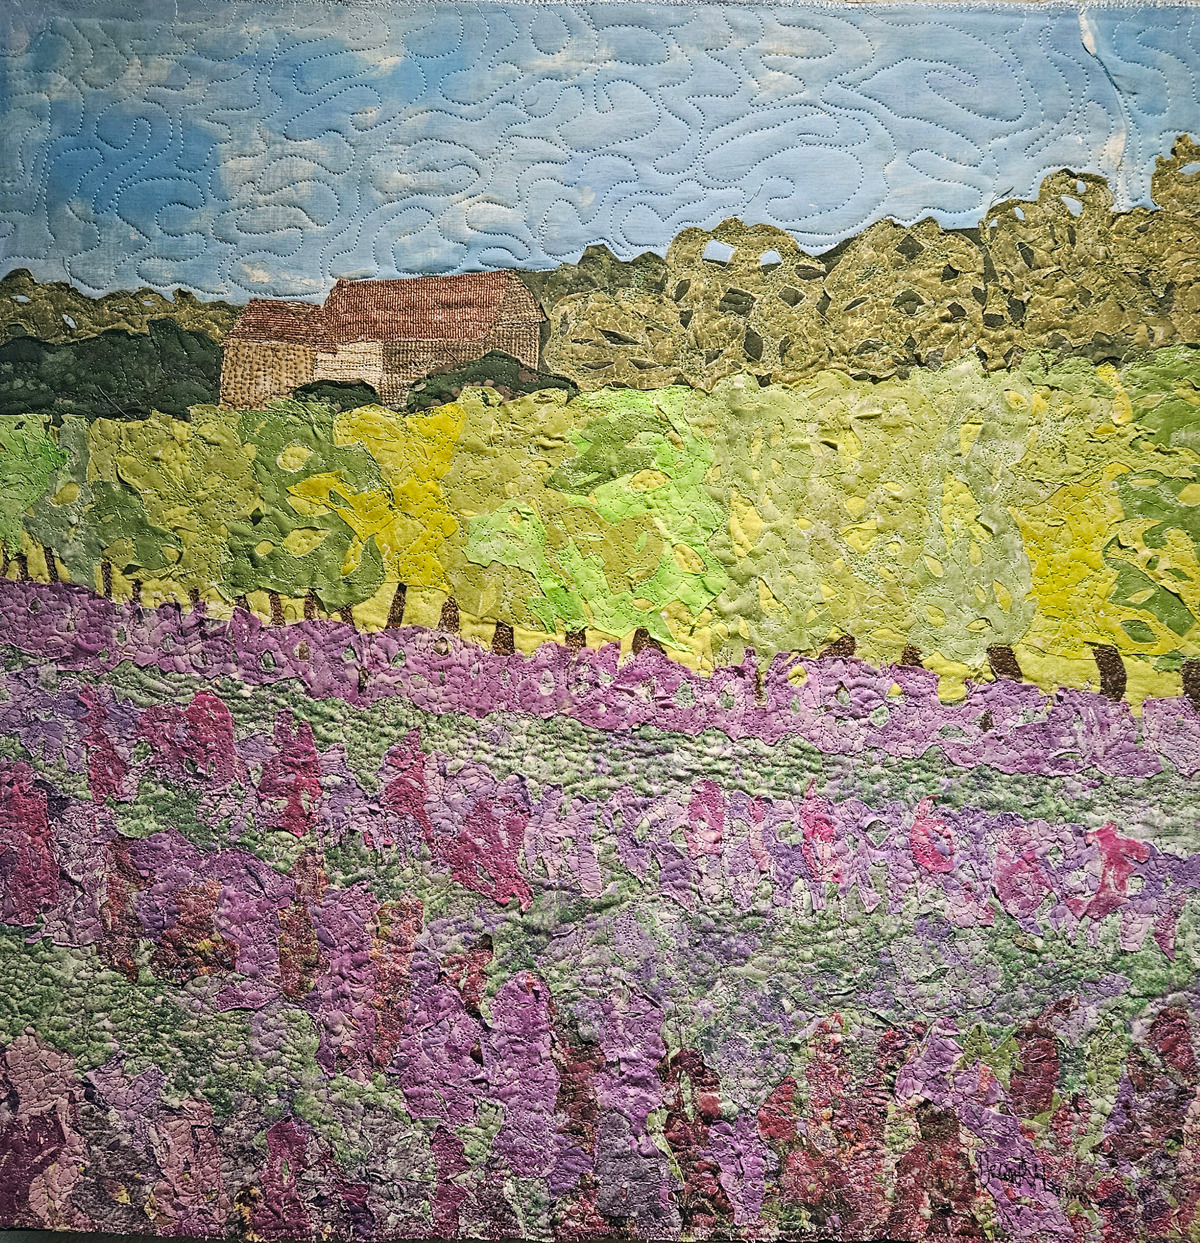 Lavender fields wefwen